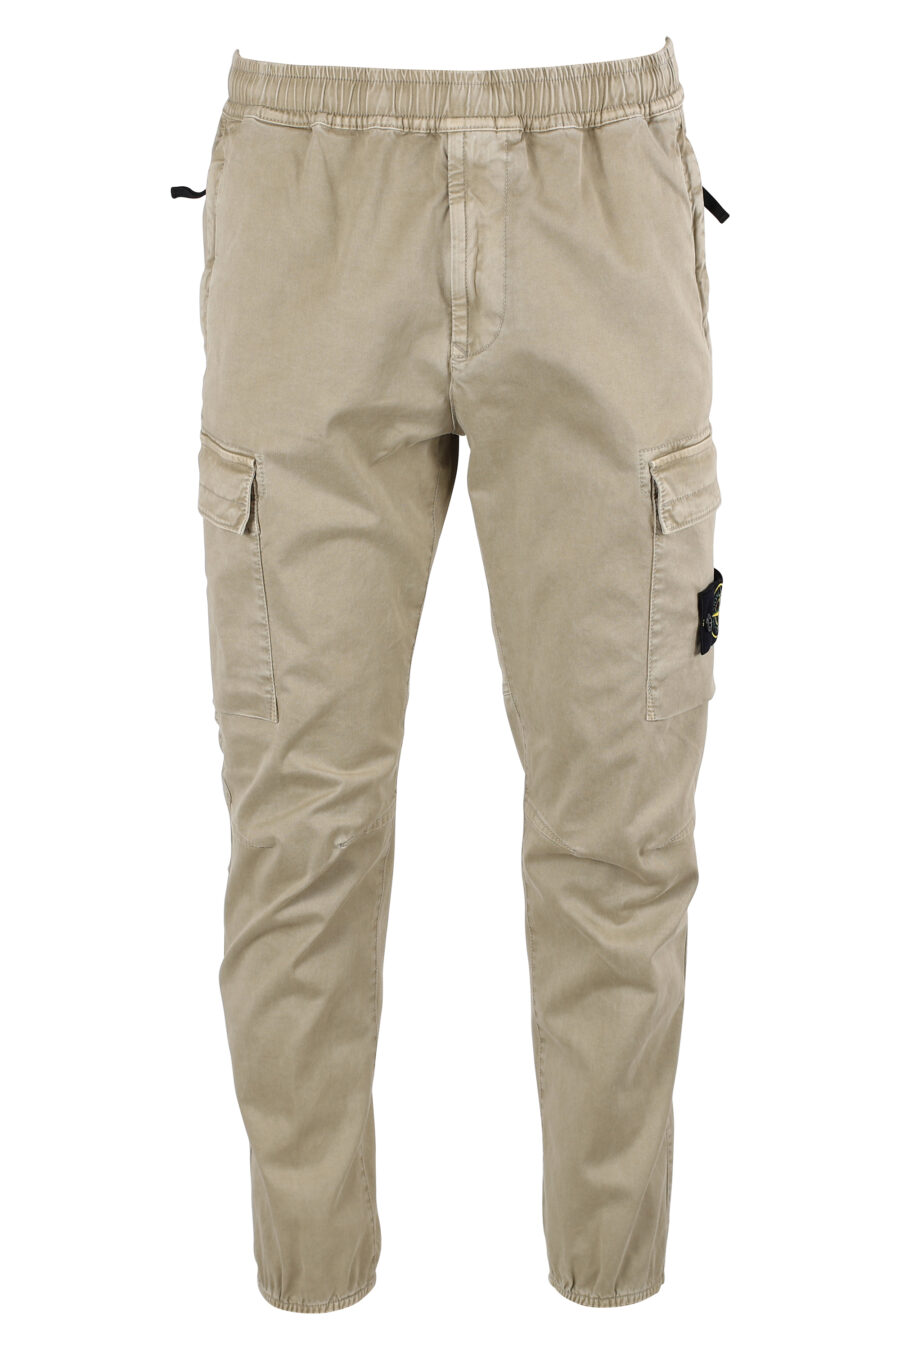 Pantalón beige estilo cargo con parche lateral - IMG 8325